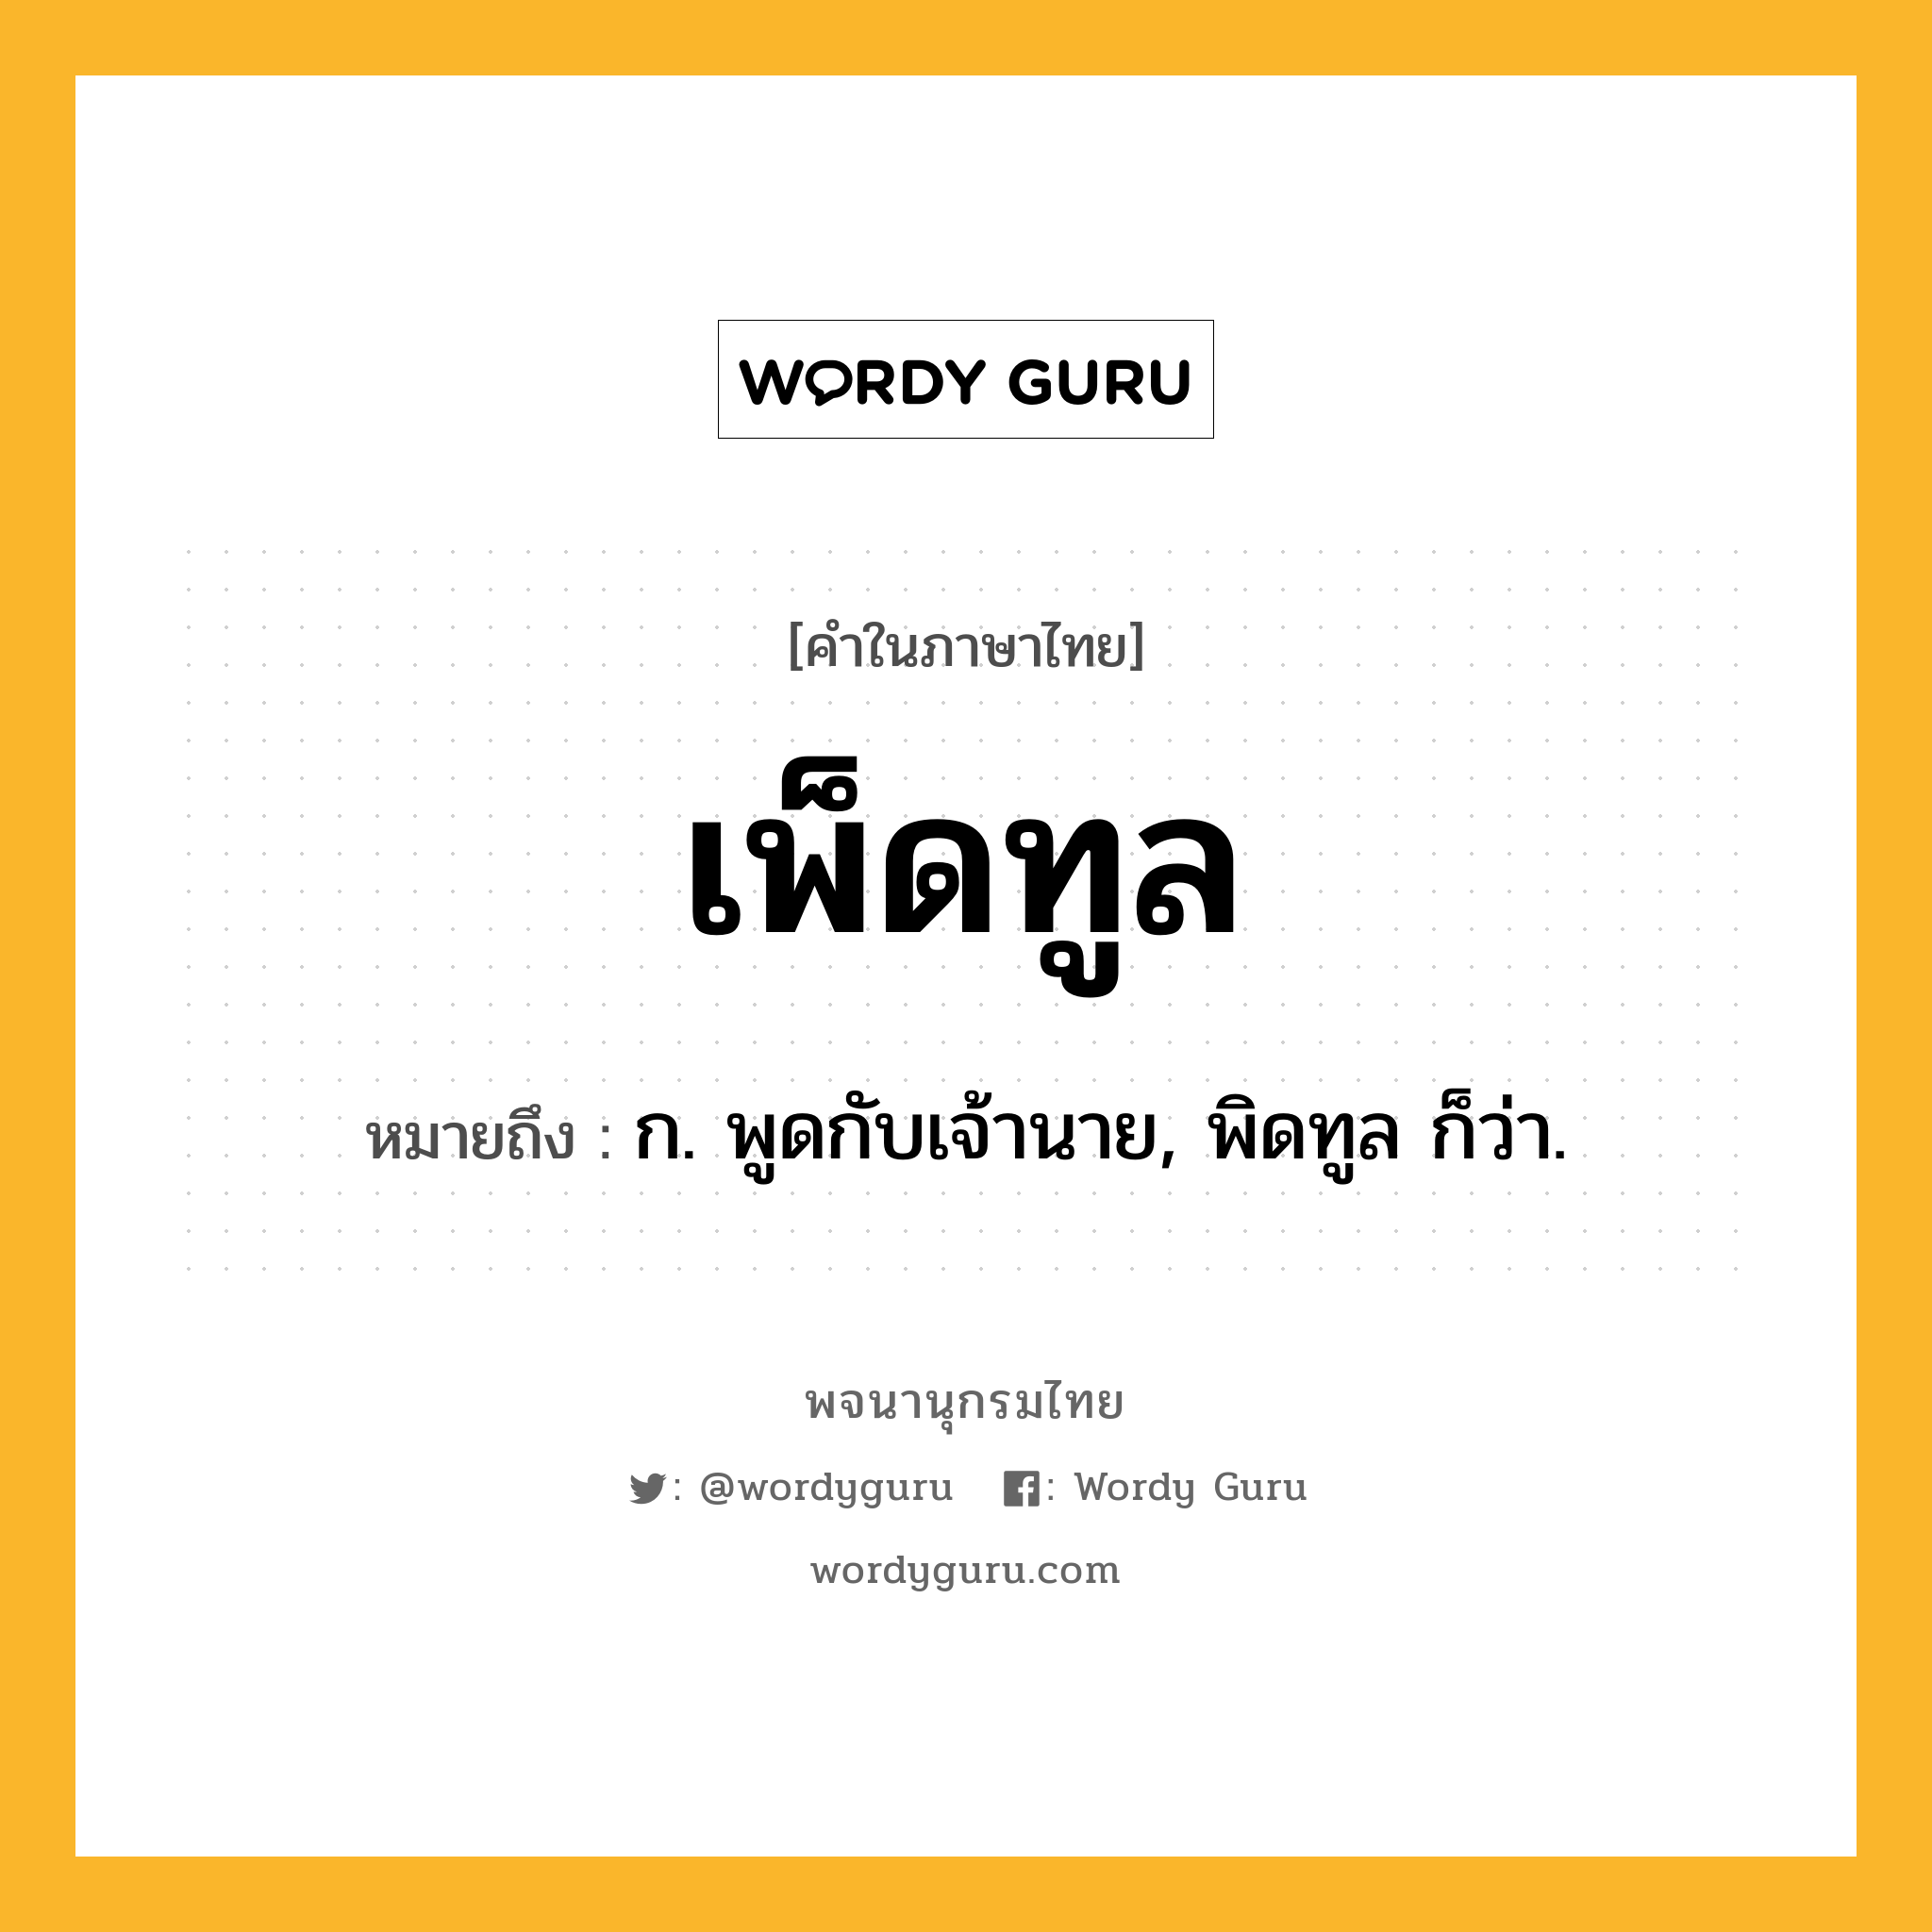 เพ็ดทูล หมายถึงอะไร?, คำในภาษาไทย เพ็ดทูล หมายถึง ก. พูดกับเจ้านาย, พิดทูล ก็ว่า.